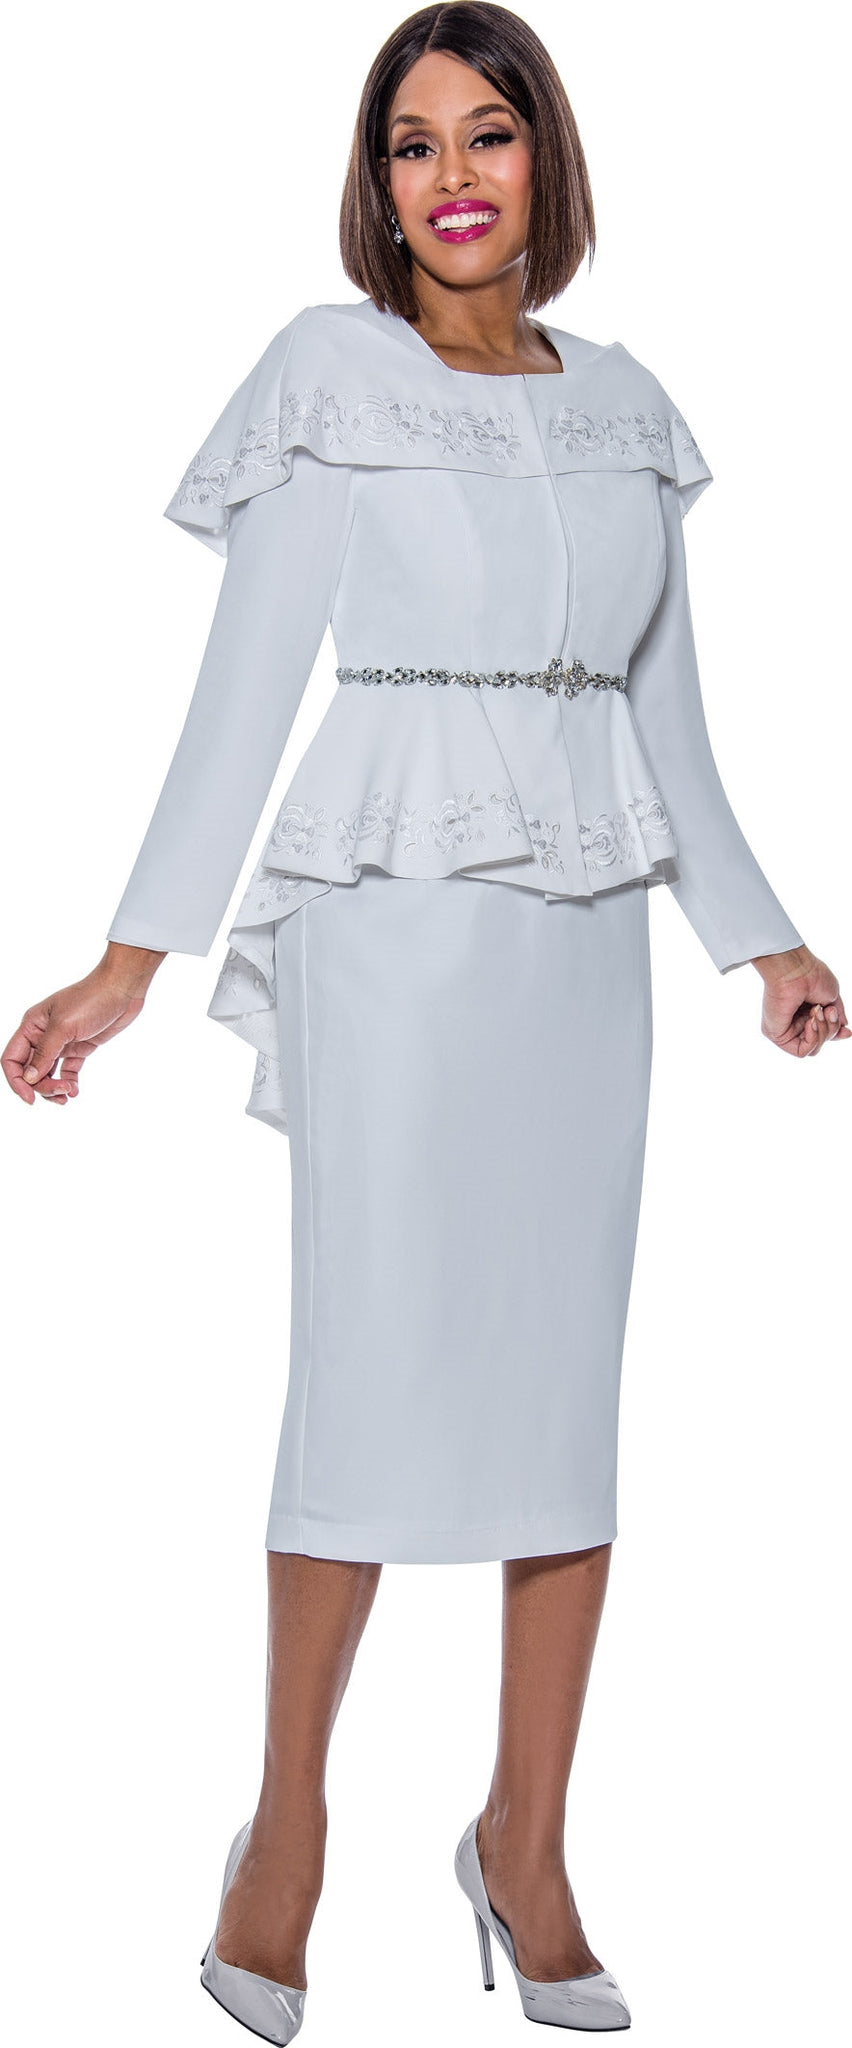 Divine Queen Skirt Suit 2162C-Black | Church suits for less